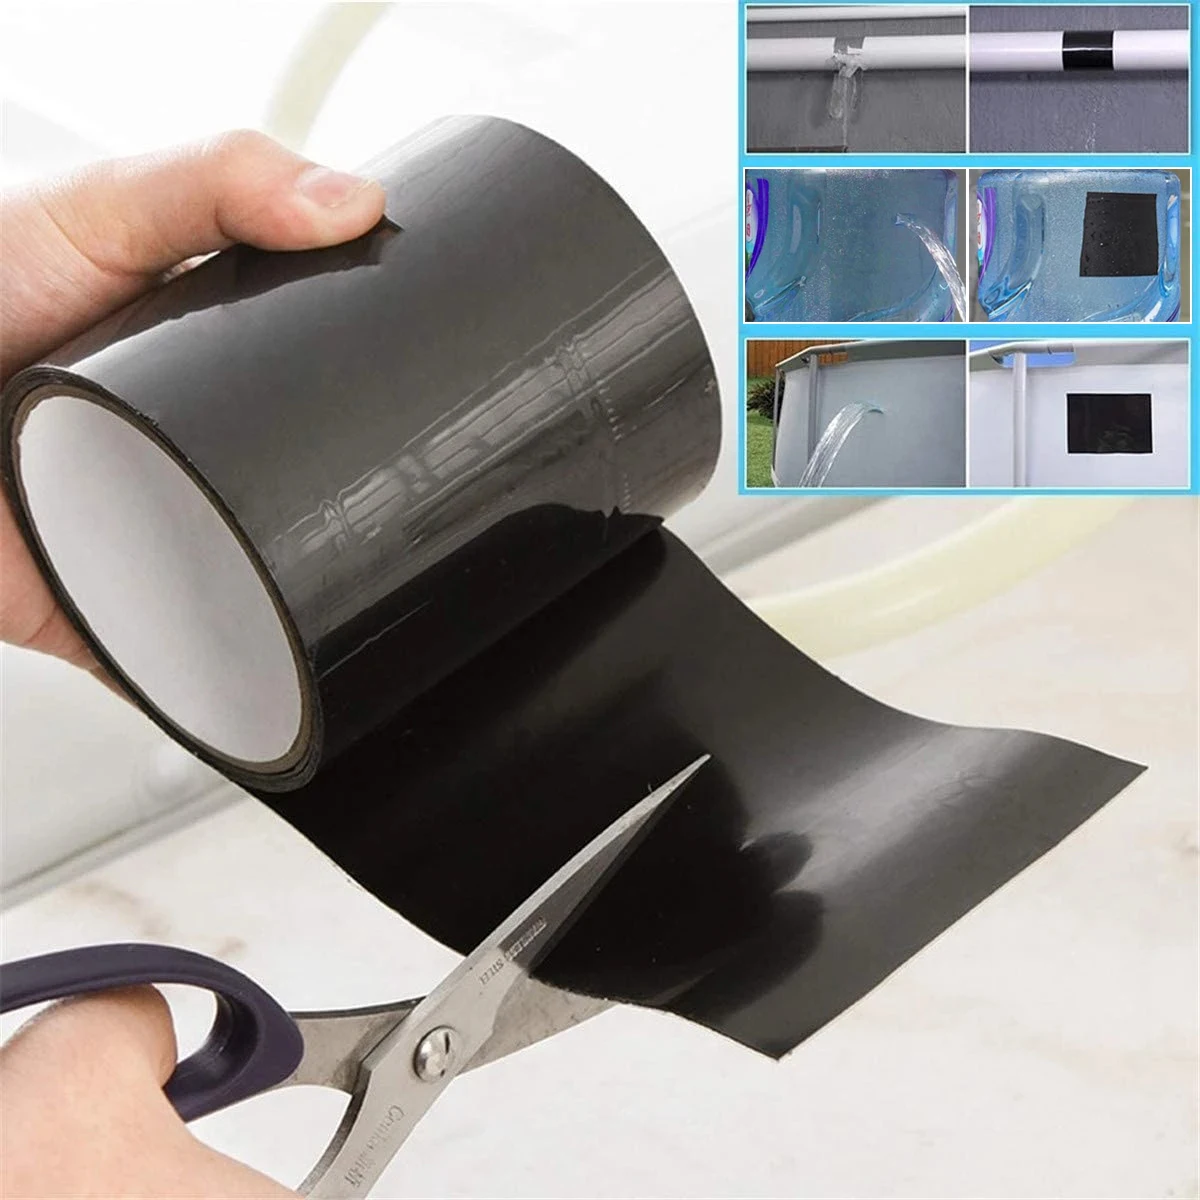 150cm Repair Tape Super Strong Fiber Waterproof Stop Leaks Seal Performance Self Fix Tape Adhesive Duct Tape Repair The Gap